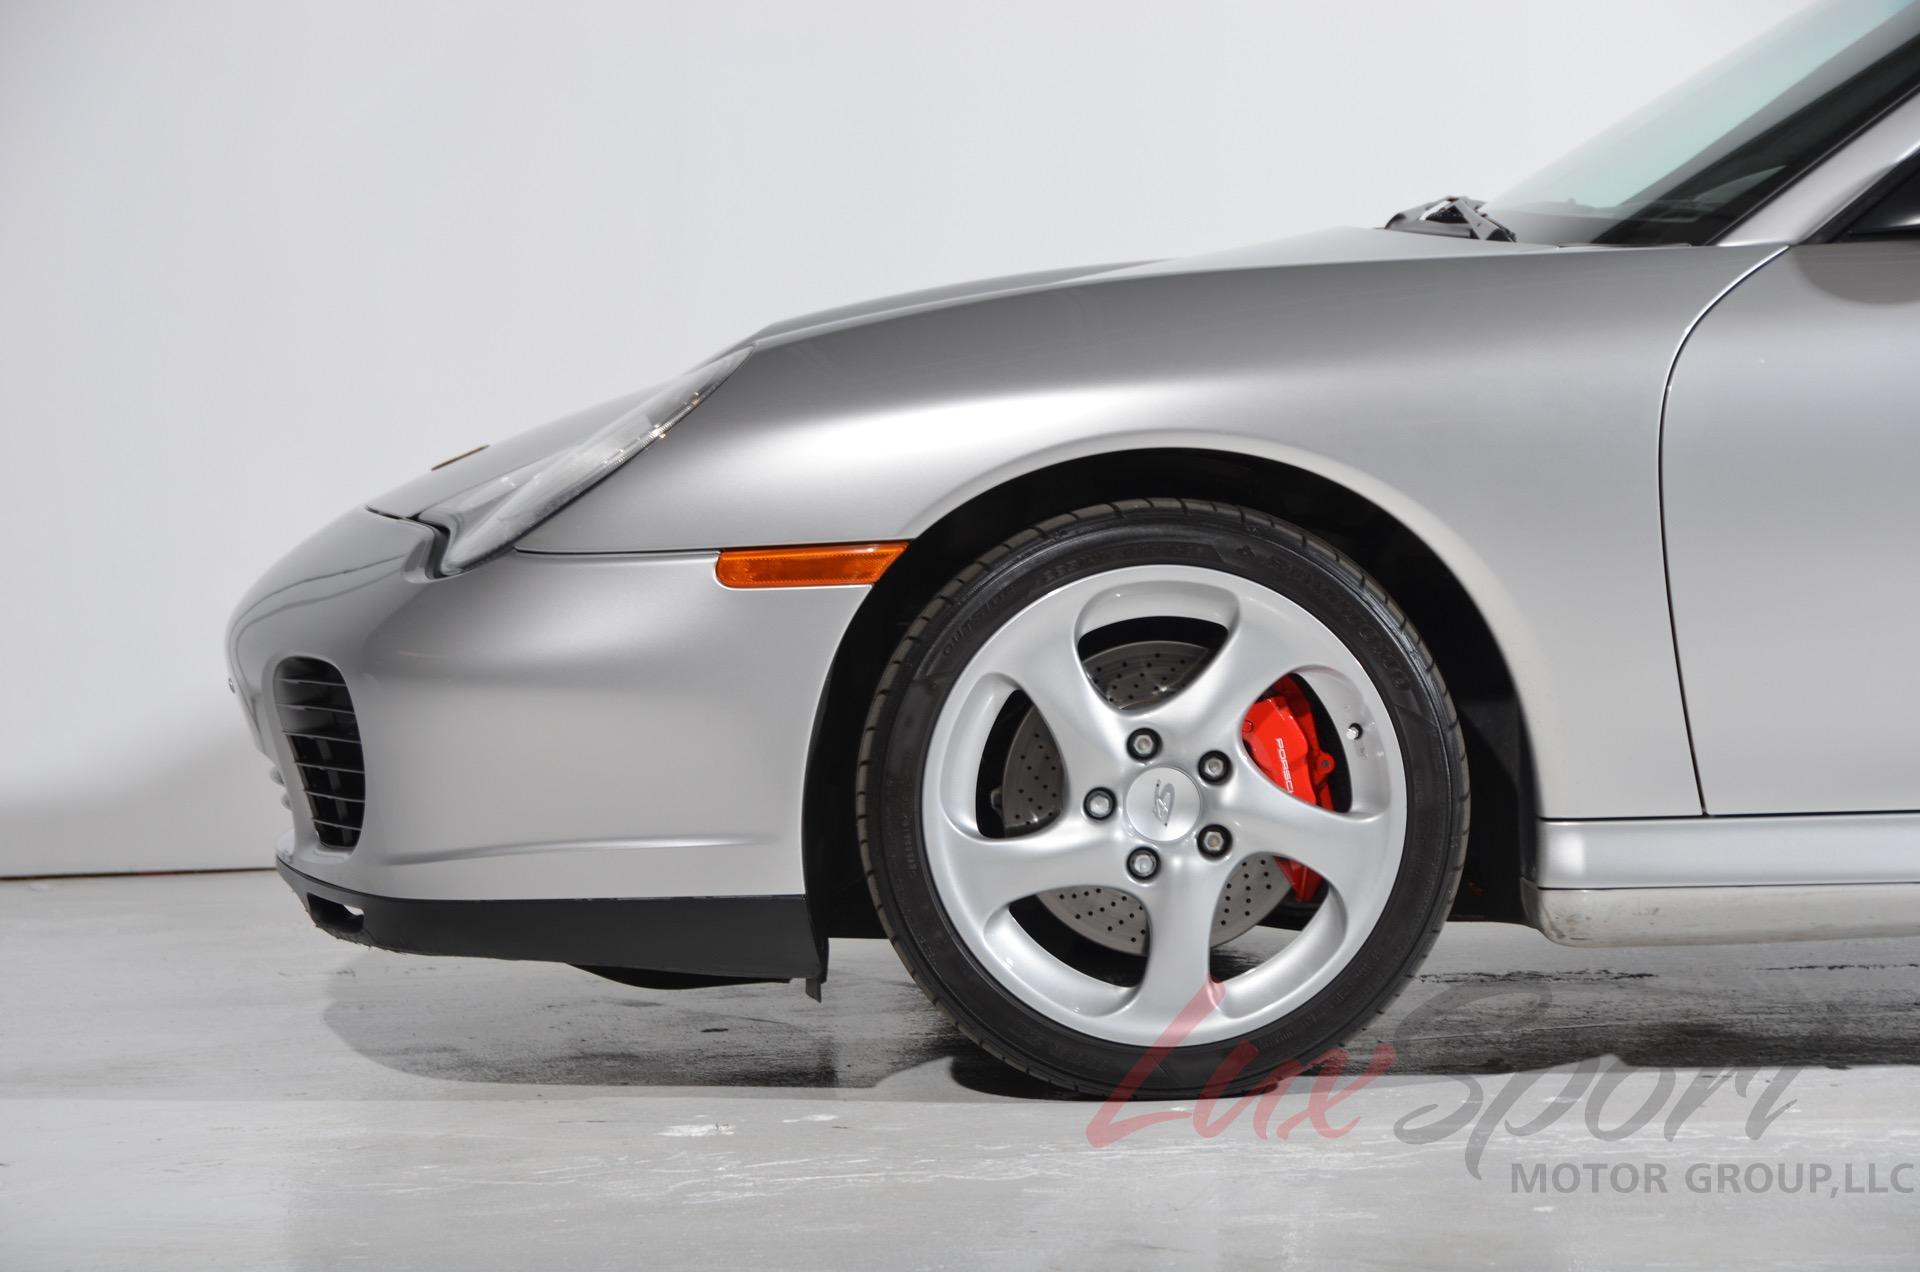 Used 2004 Porsche 911 Carrera 4S | Plainview, NY